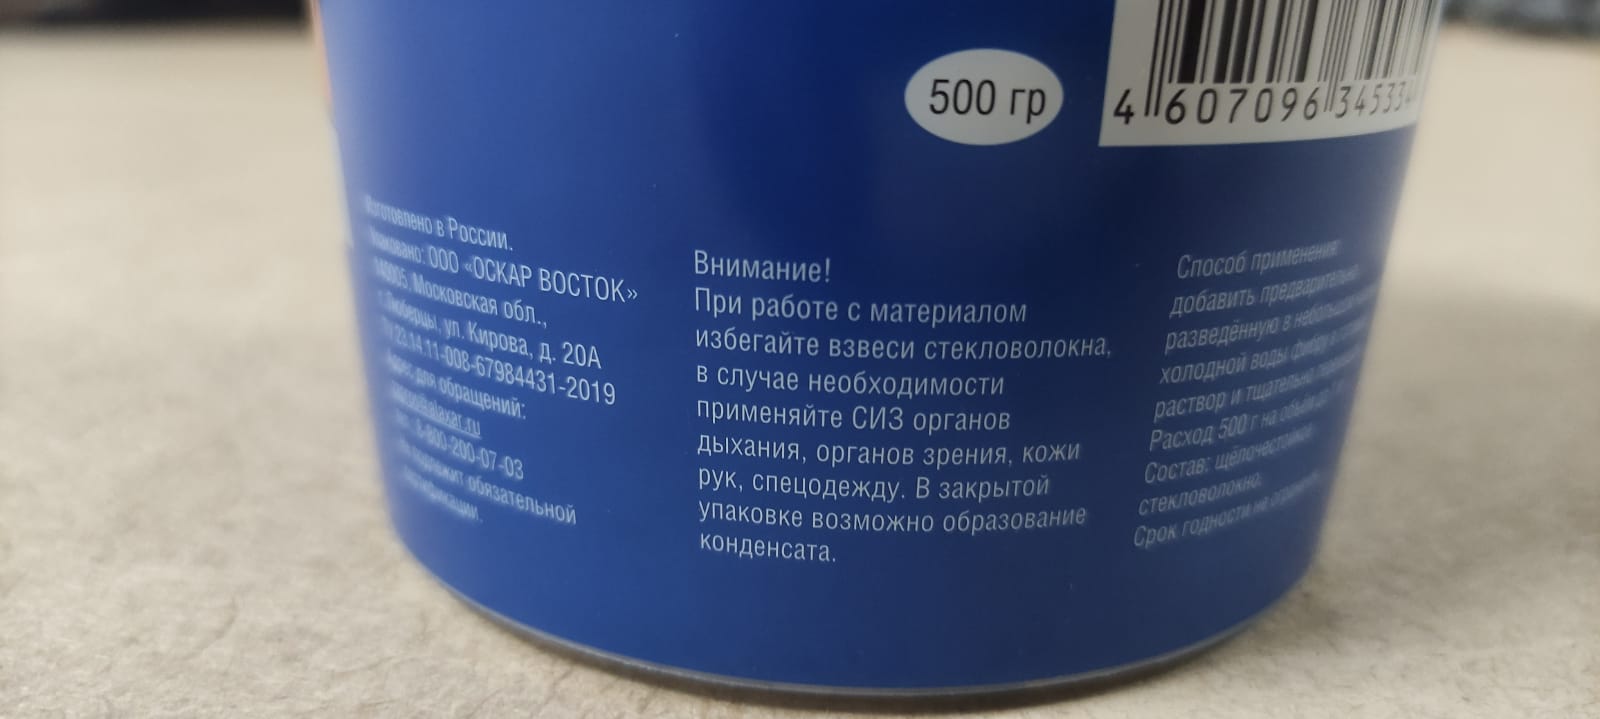 Армирующая добавка Крепыш 500 гр